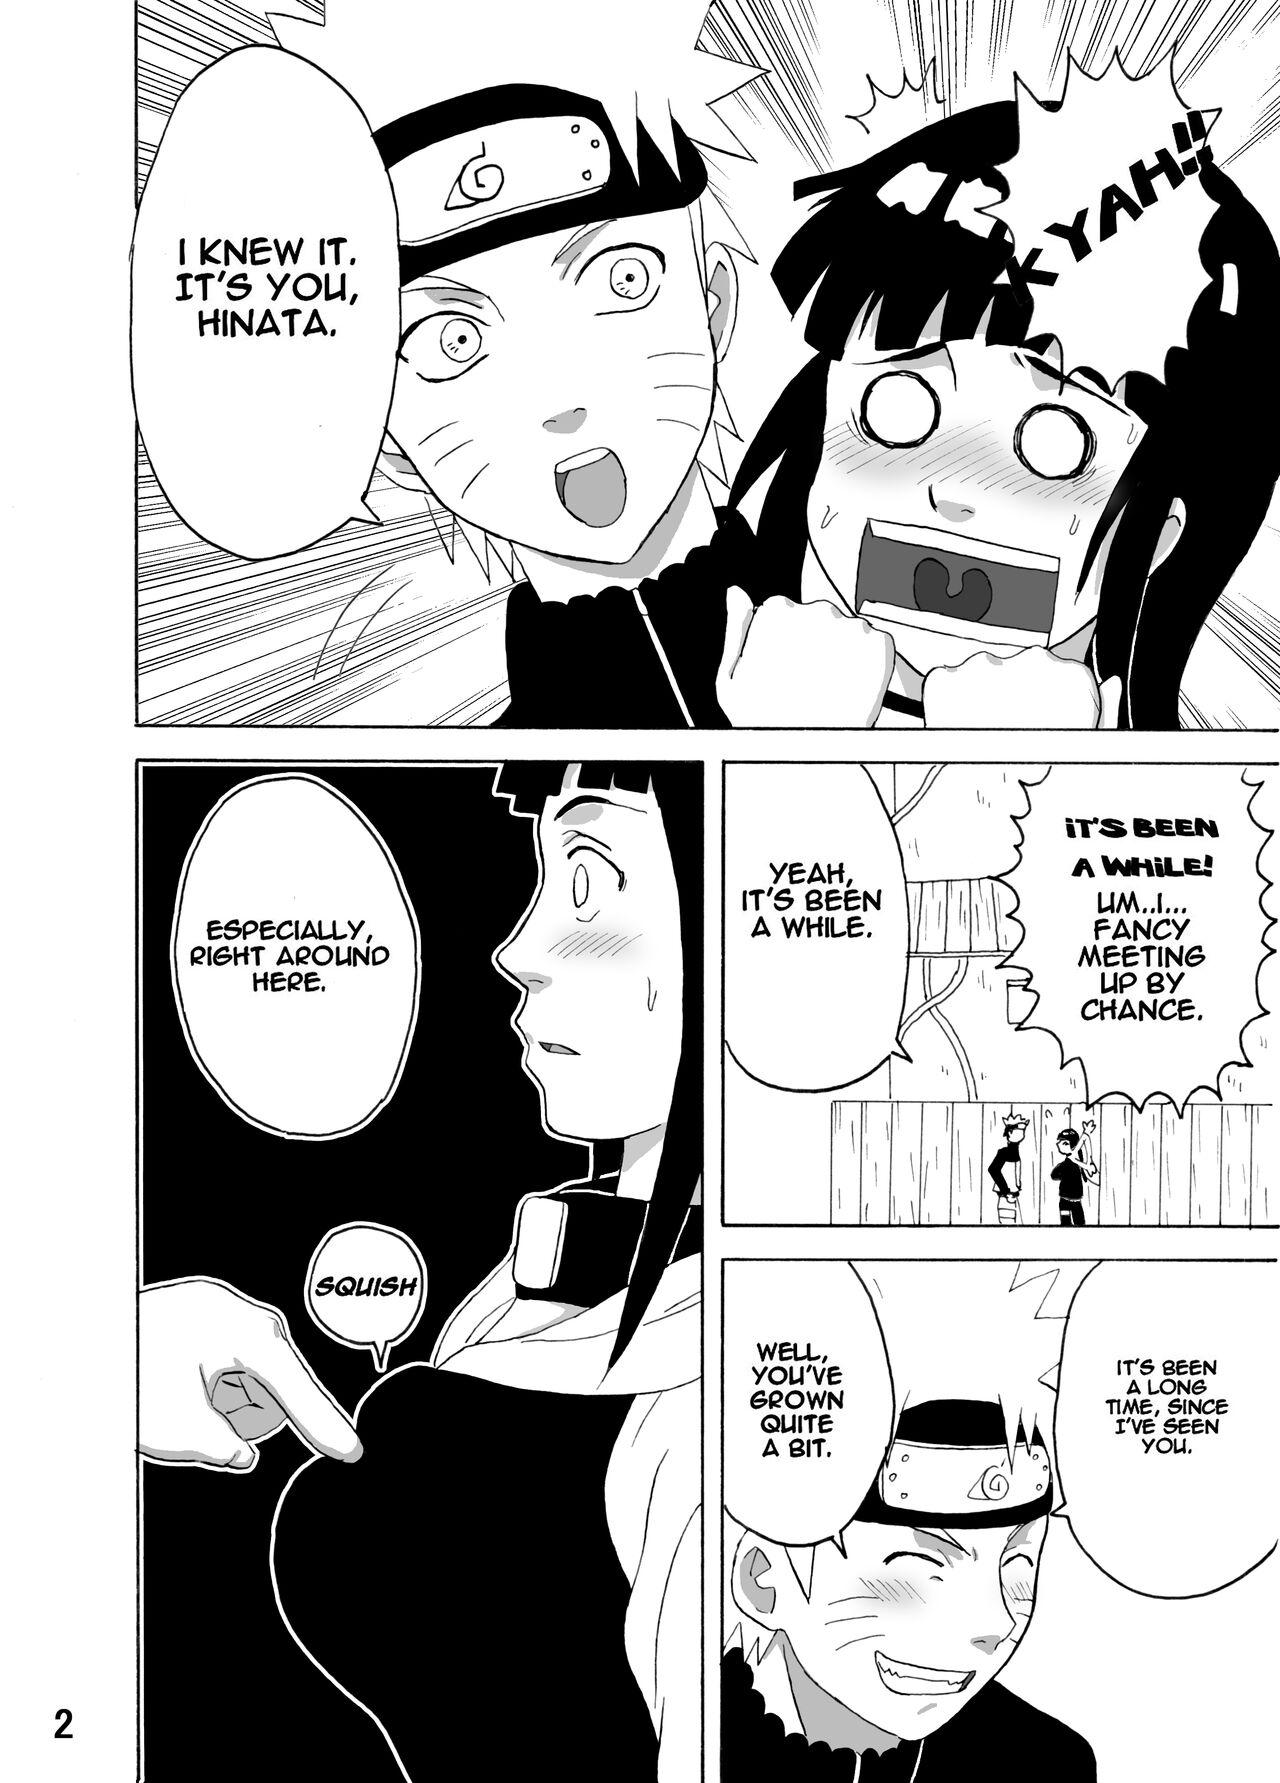 Gayfuck Hinata Ganbaru! | Hinata Fight! - Naruto Hottie - Page 3